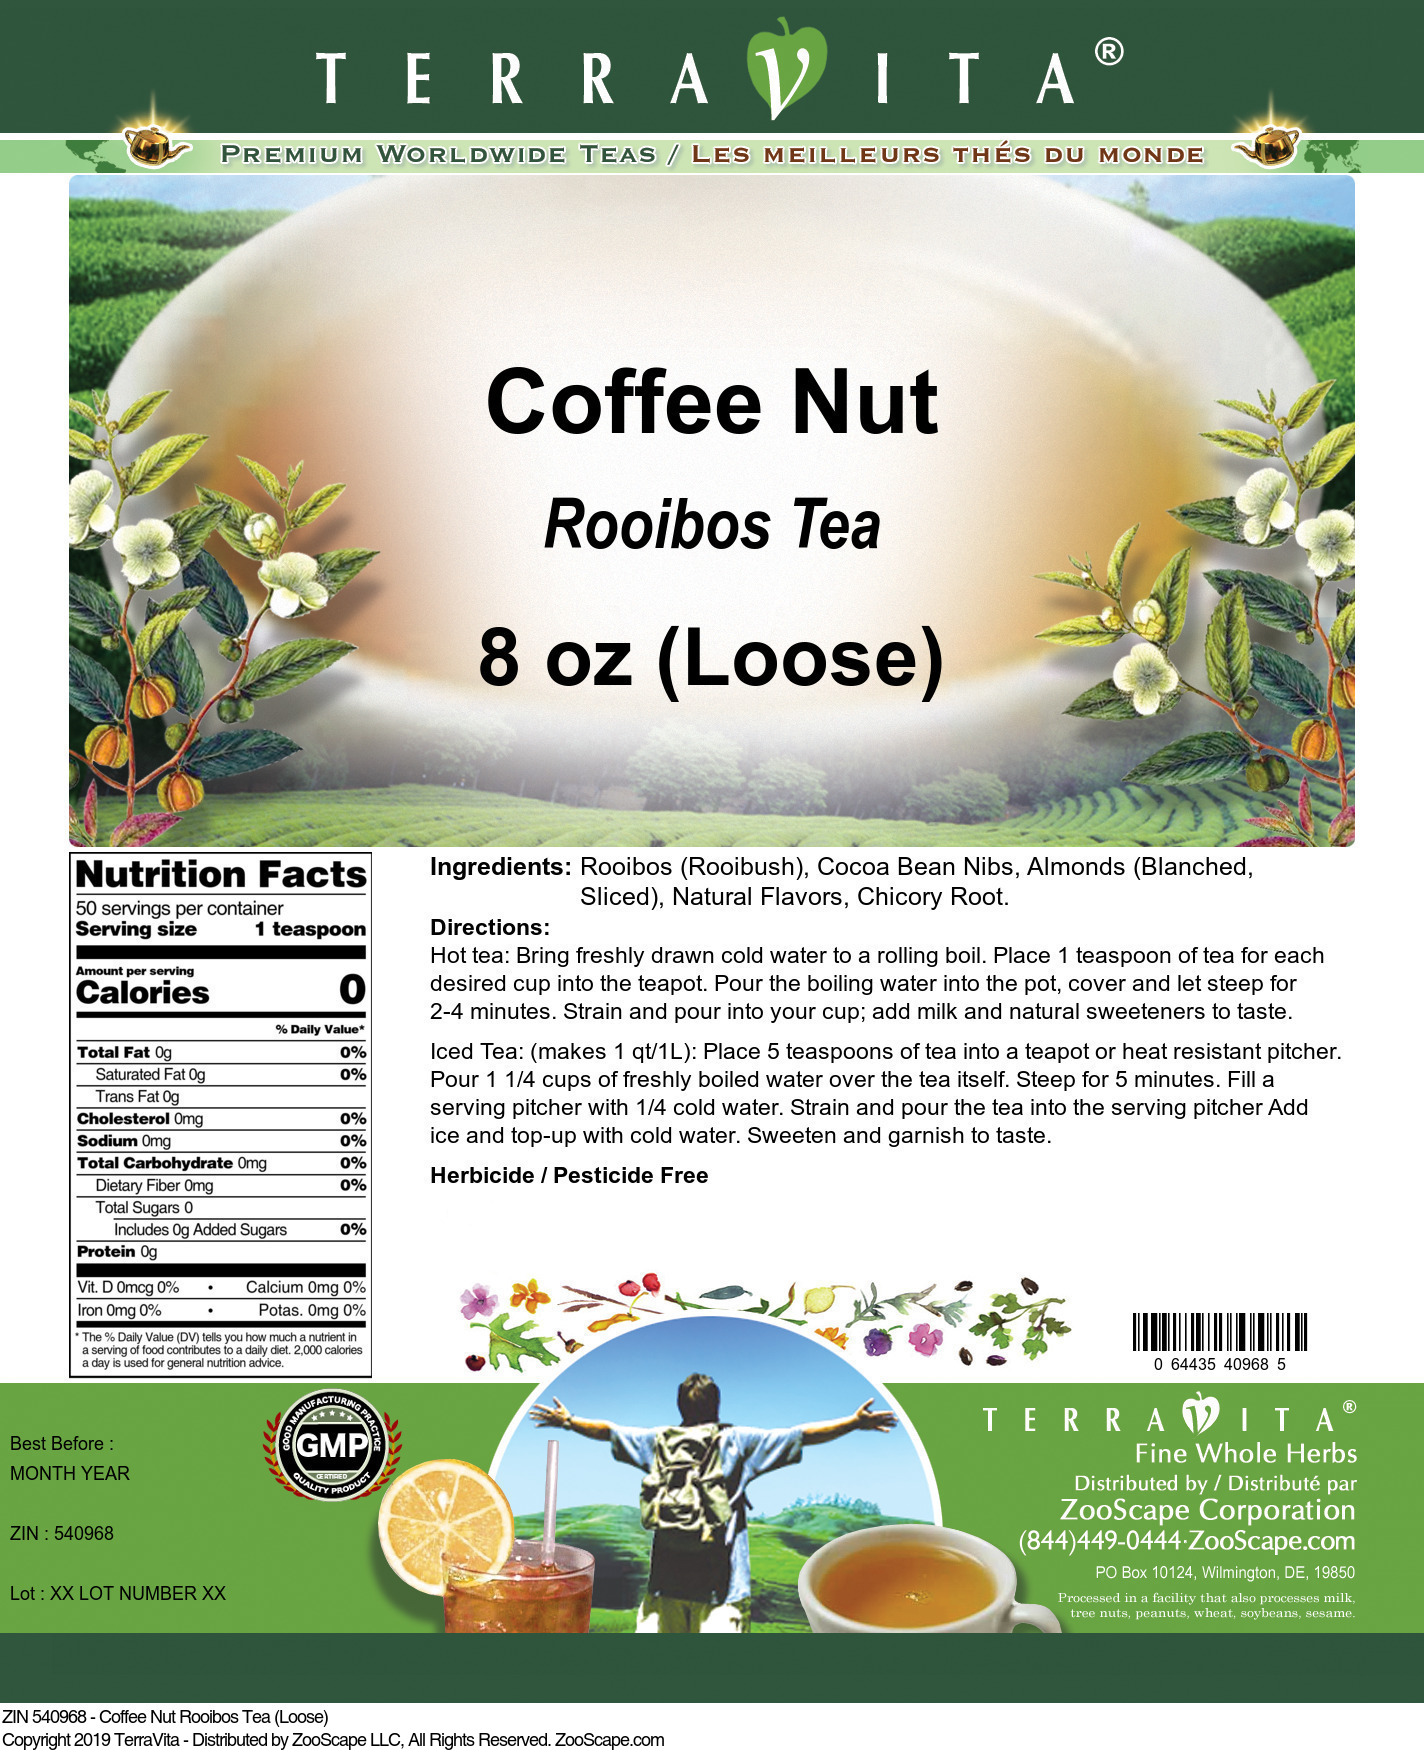 Coffee Nut Rooibos Tea (Loose) - Label